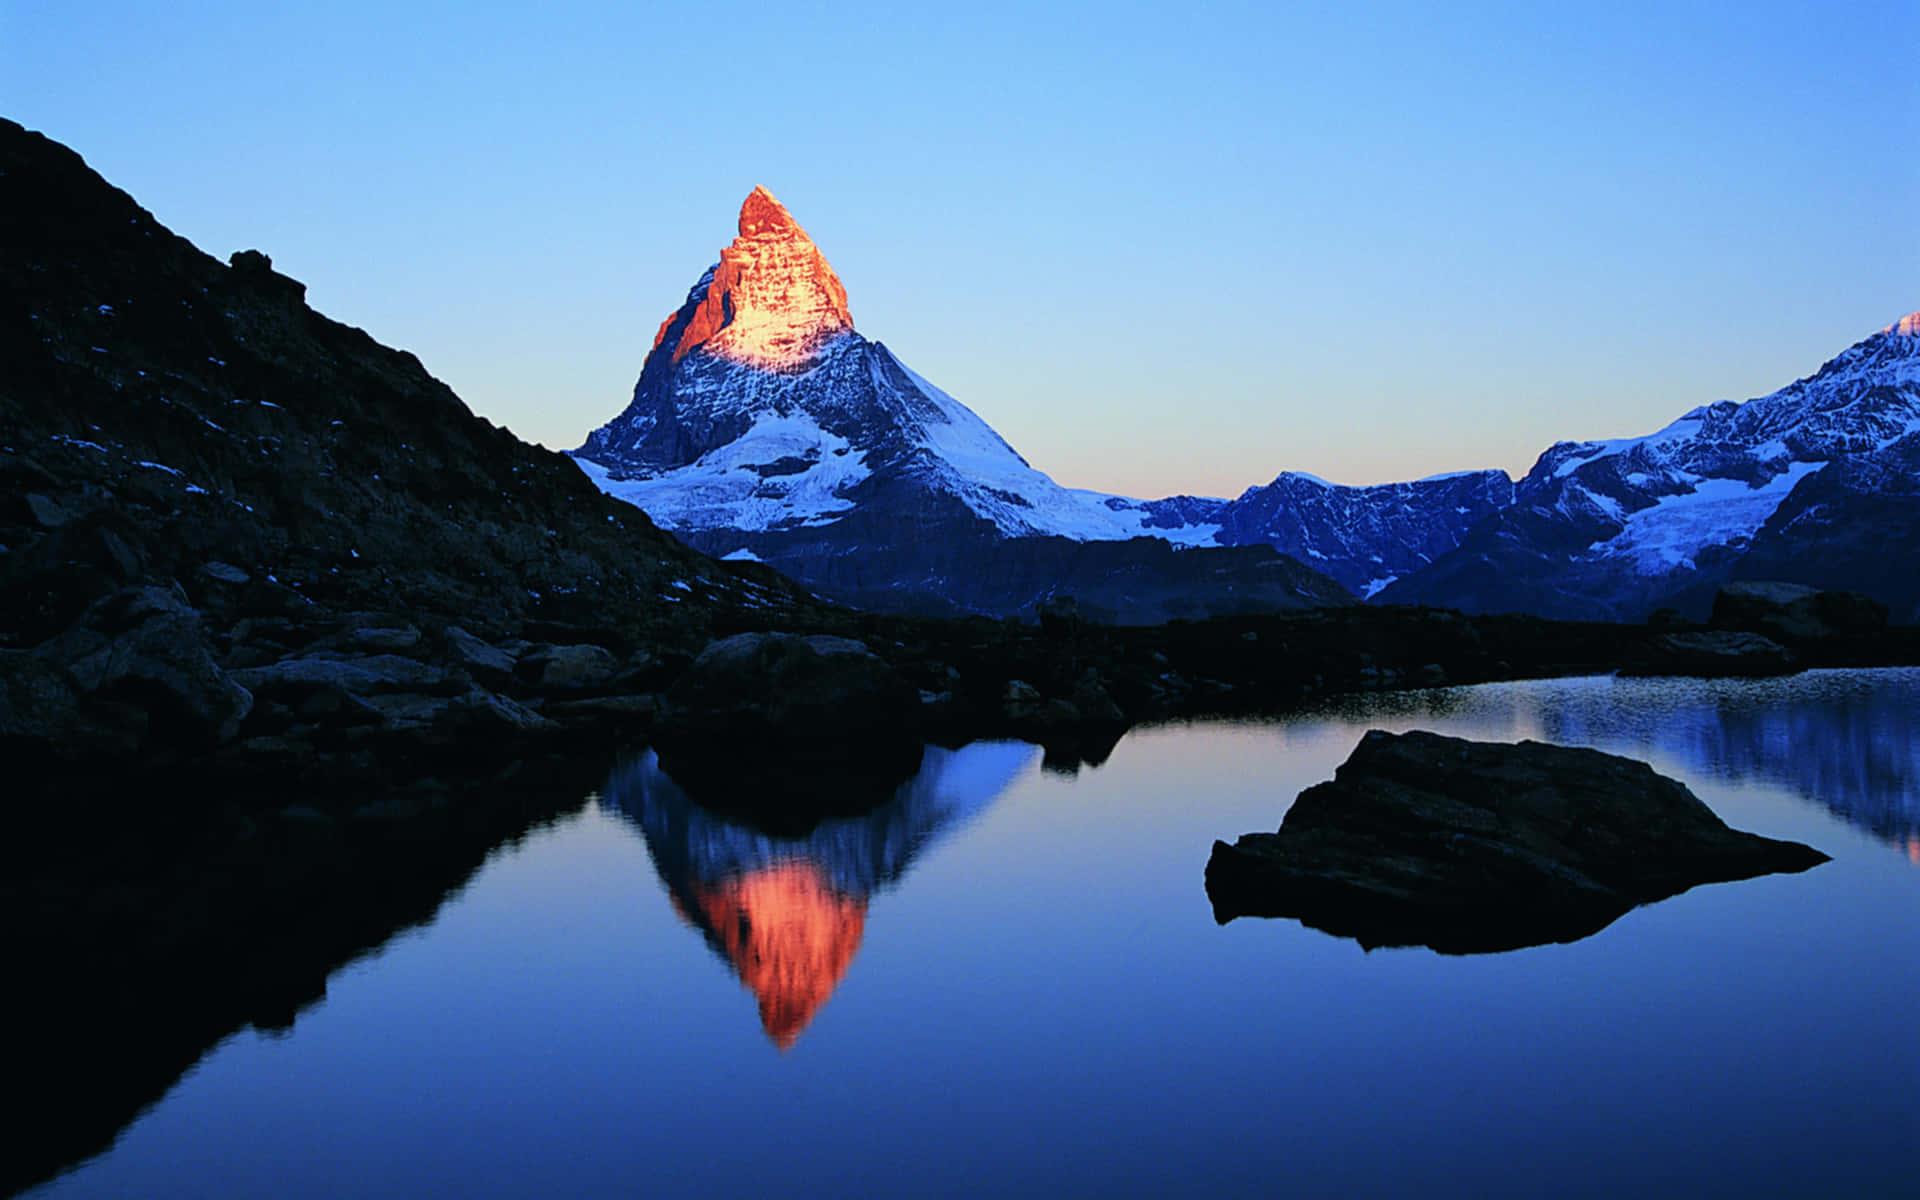 Alpenglowon Matterhorn Peak Wallpaper